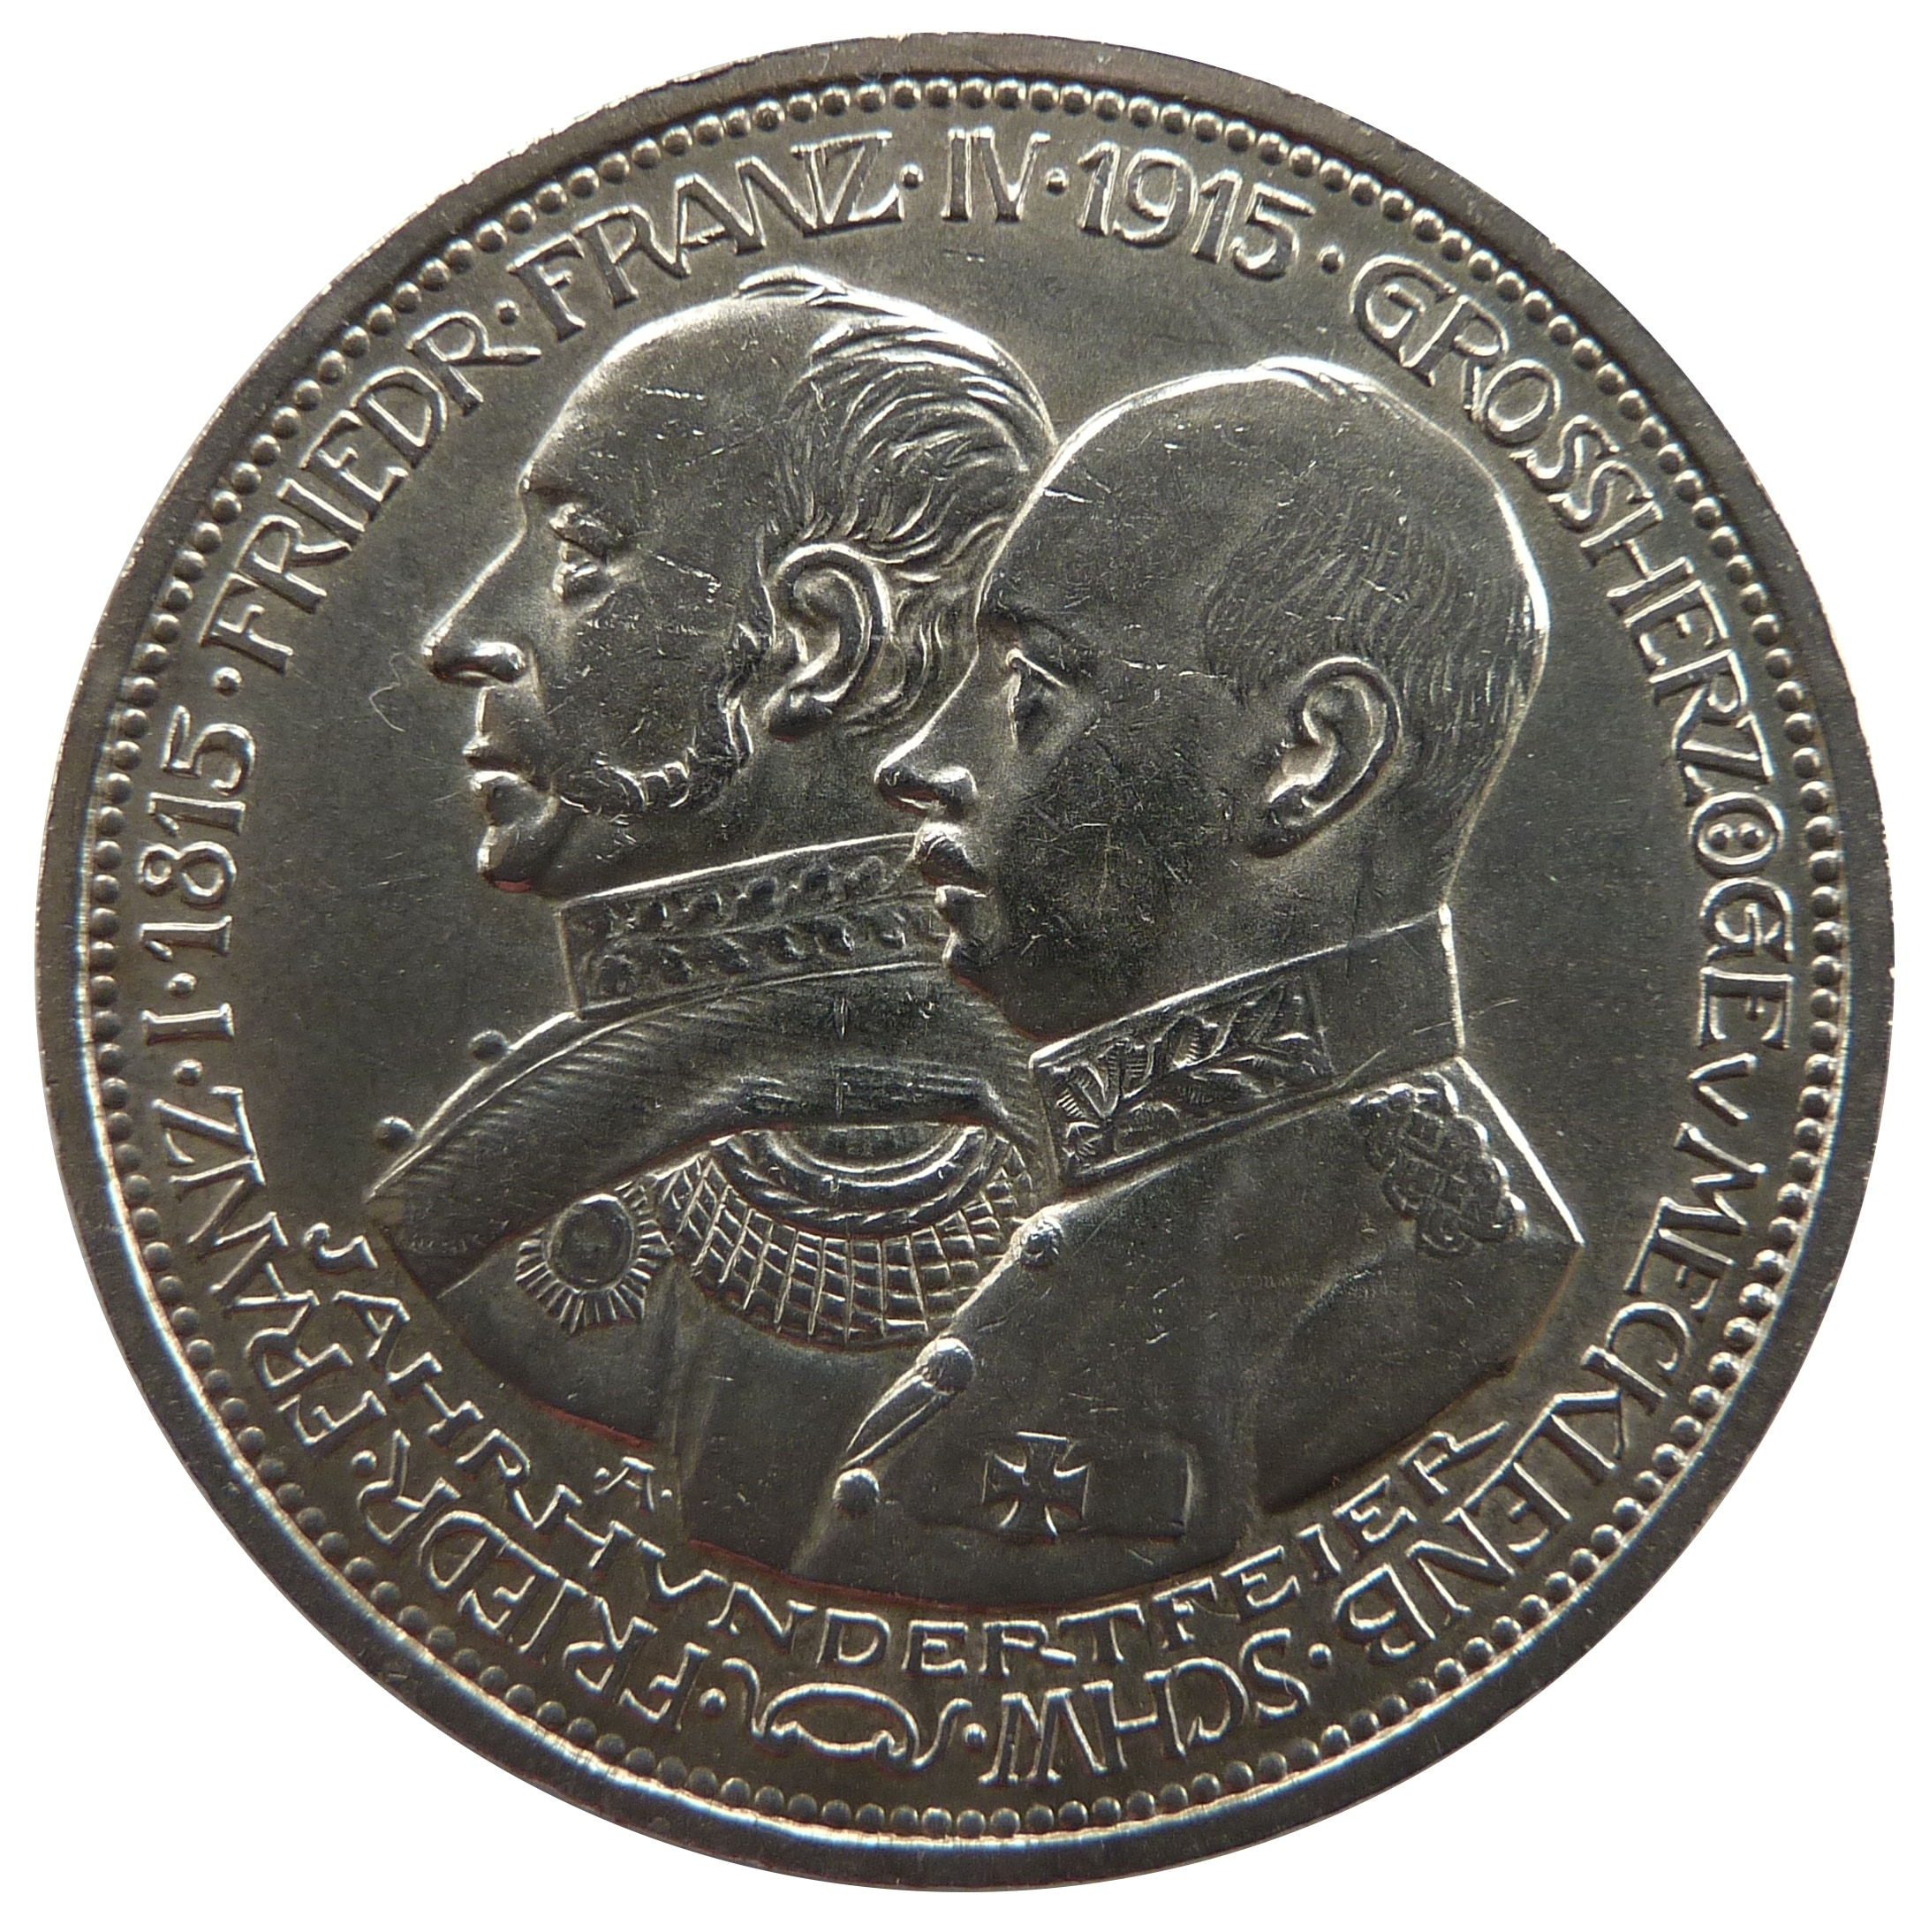 silver round two men's profile 1915 jahrhvndertfeier coin